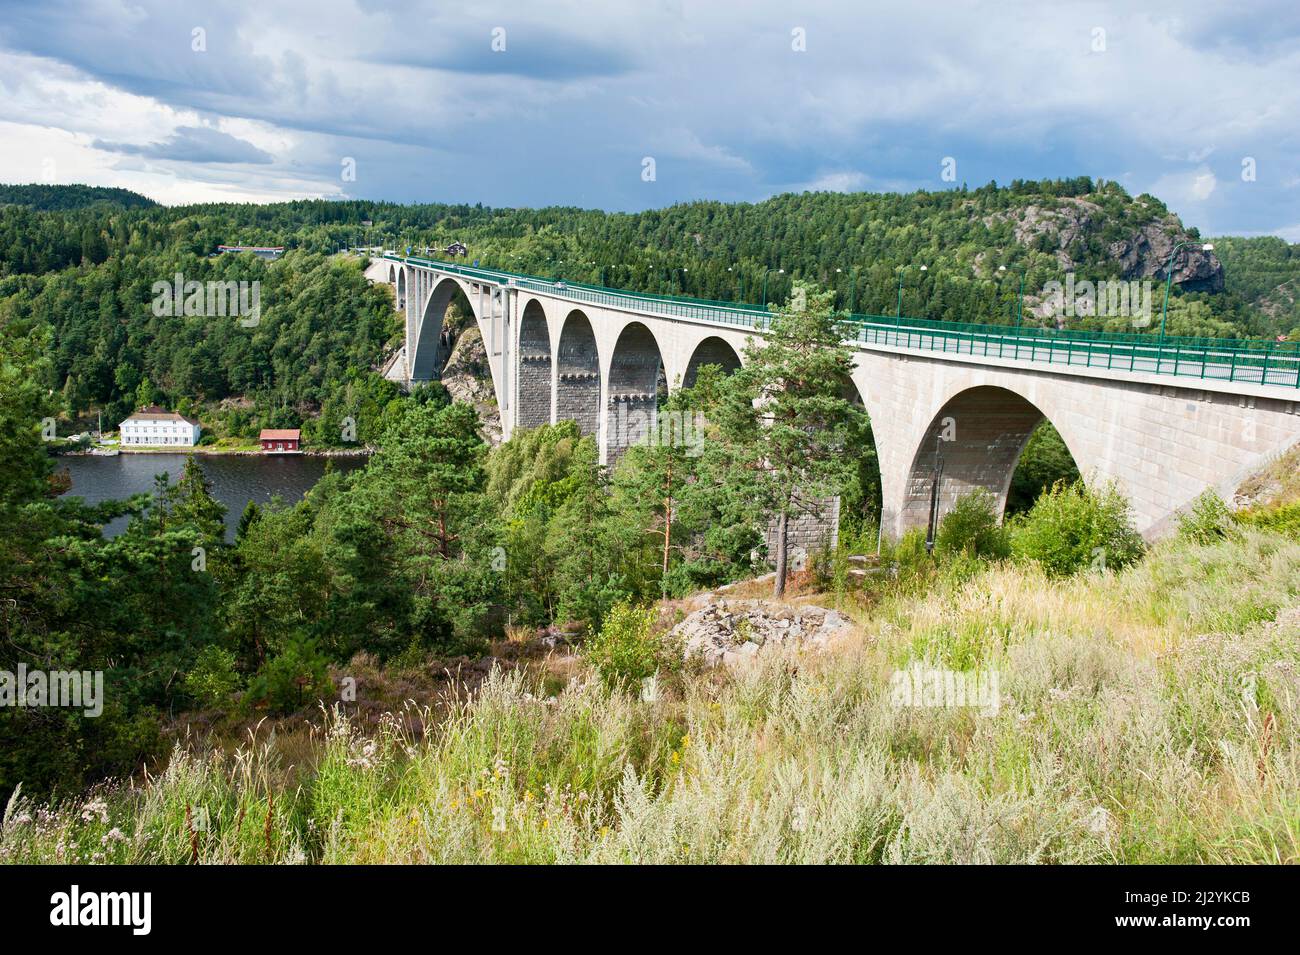 Svinesunds bridge, between Sweden and Norway. Stock Photo